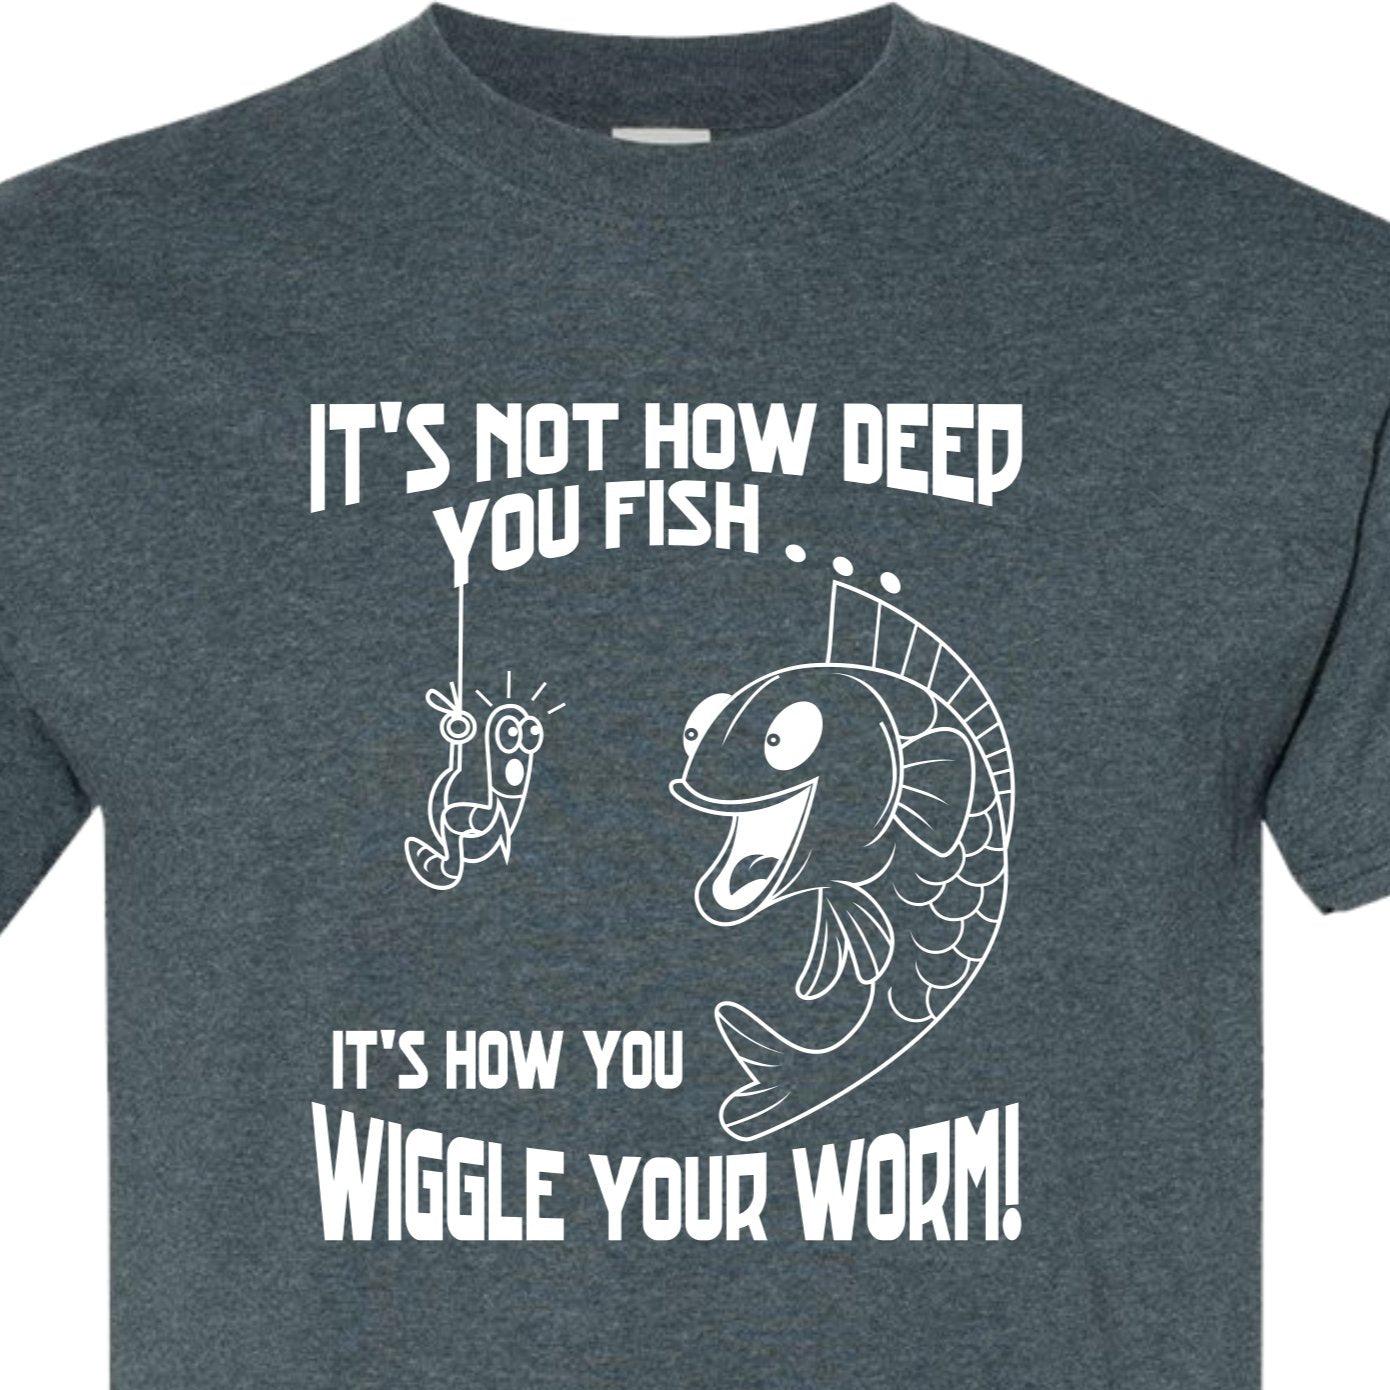 It's not how deep you fish, it's how you Wiggle your Worm T Shirt, Fishing T Fishermen Tshirt - SBS T Shop